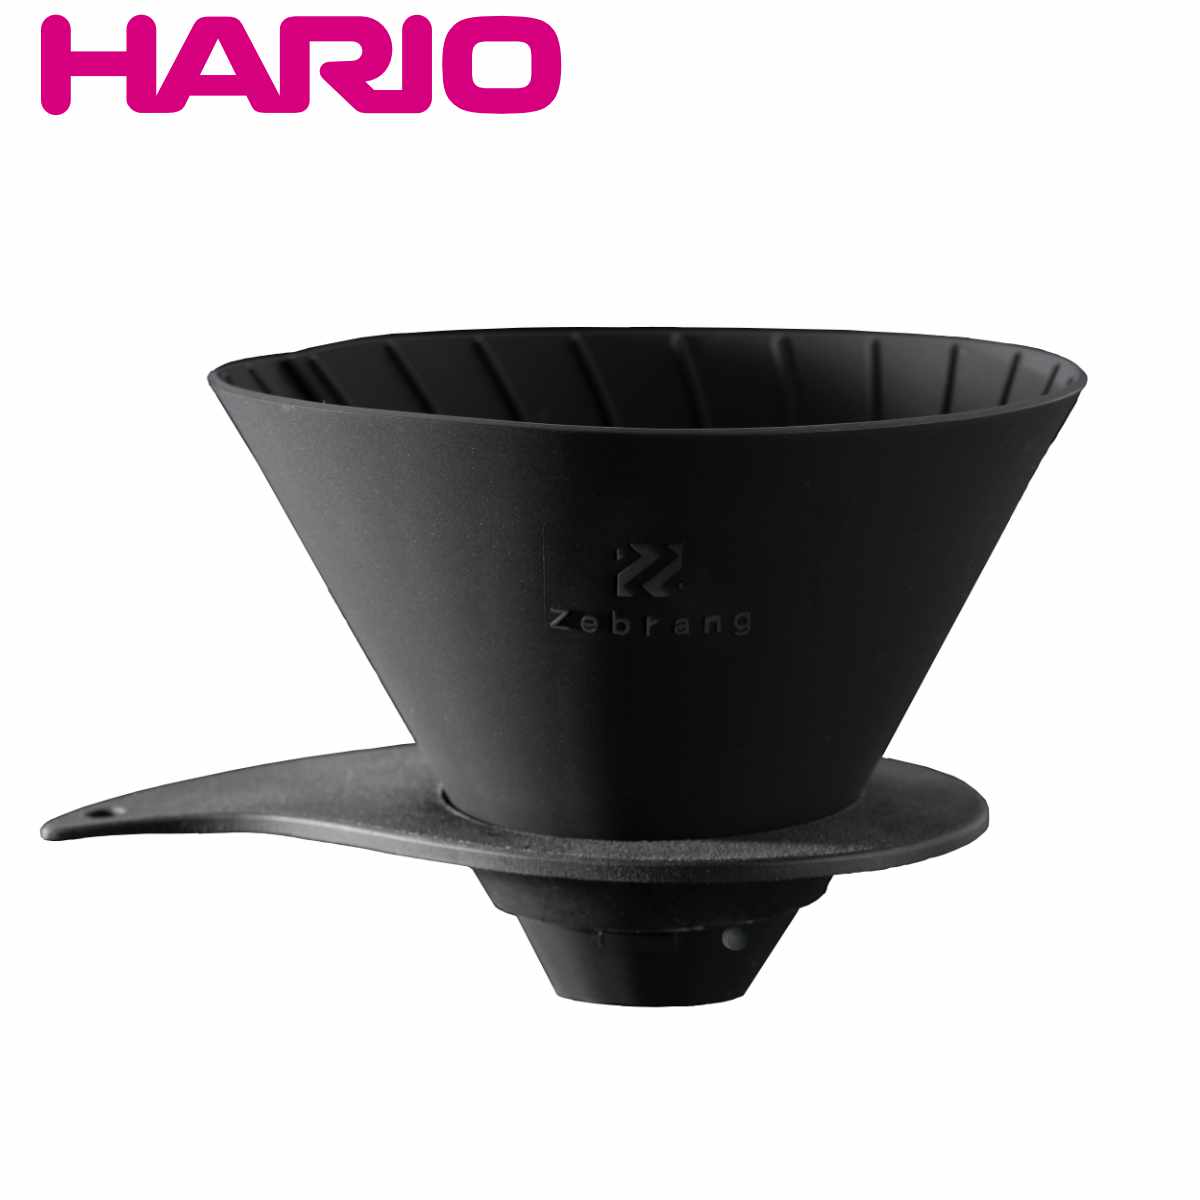 ドリッパー ハリオ V60フラットドリッパー02 1〜4杯用 Zebrang （ HARIO 折り畳み 持ち運び コーヒー コーヒードリッパー 日本製 折りた